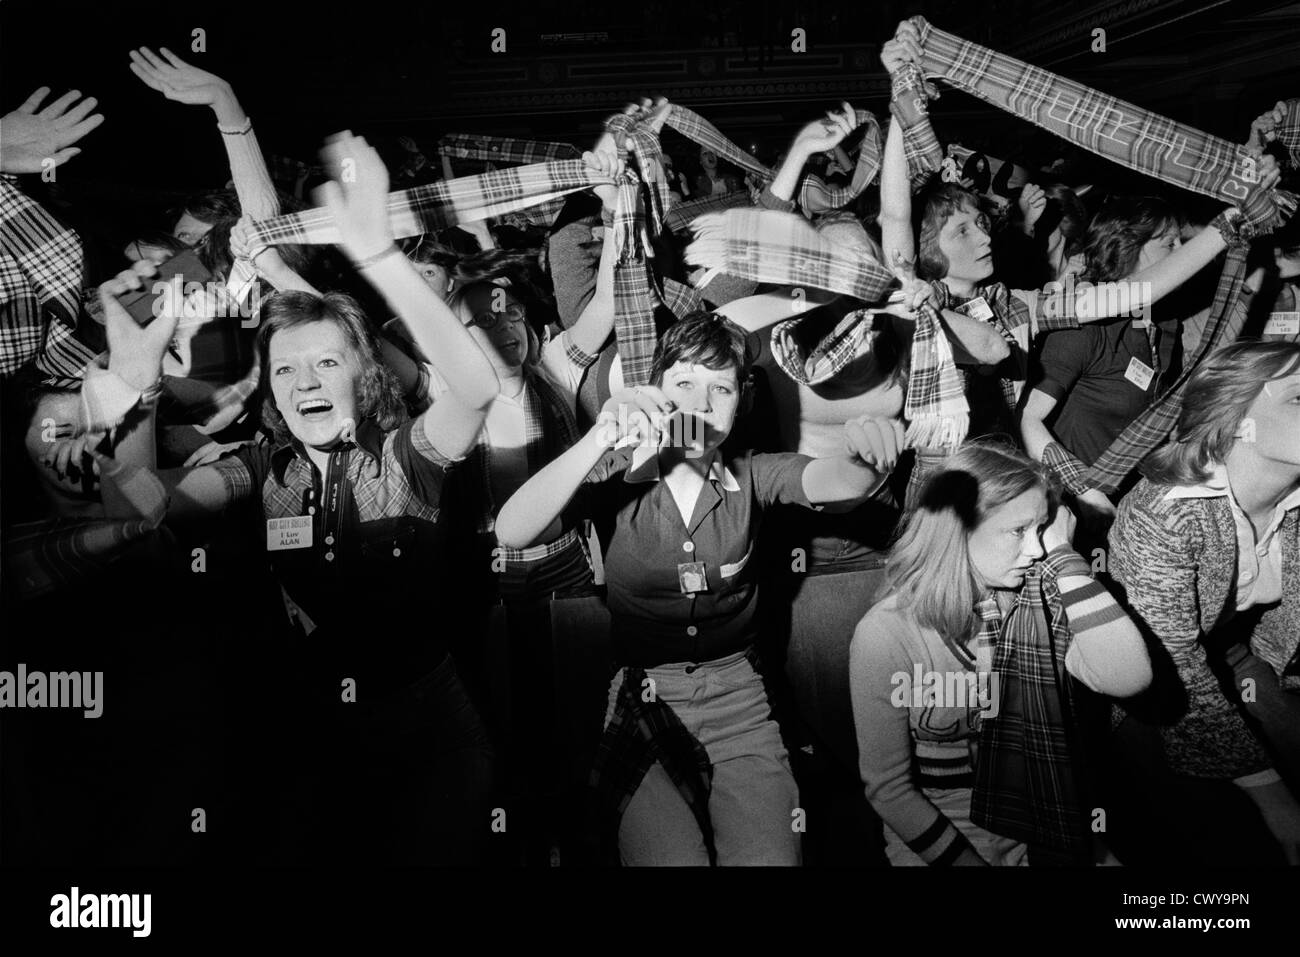 Bay City Rollers pop group, un boys band des années 1970. Groupe hystérie fans d'adolescentes hurlant et agitant des écharpes tartan. Le tartan était le style de mode promu par les Rollers. NEWCASTLE ROYAUME-UNI 1975 HOMER SYKES. Banque D'Images